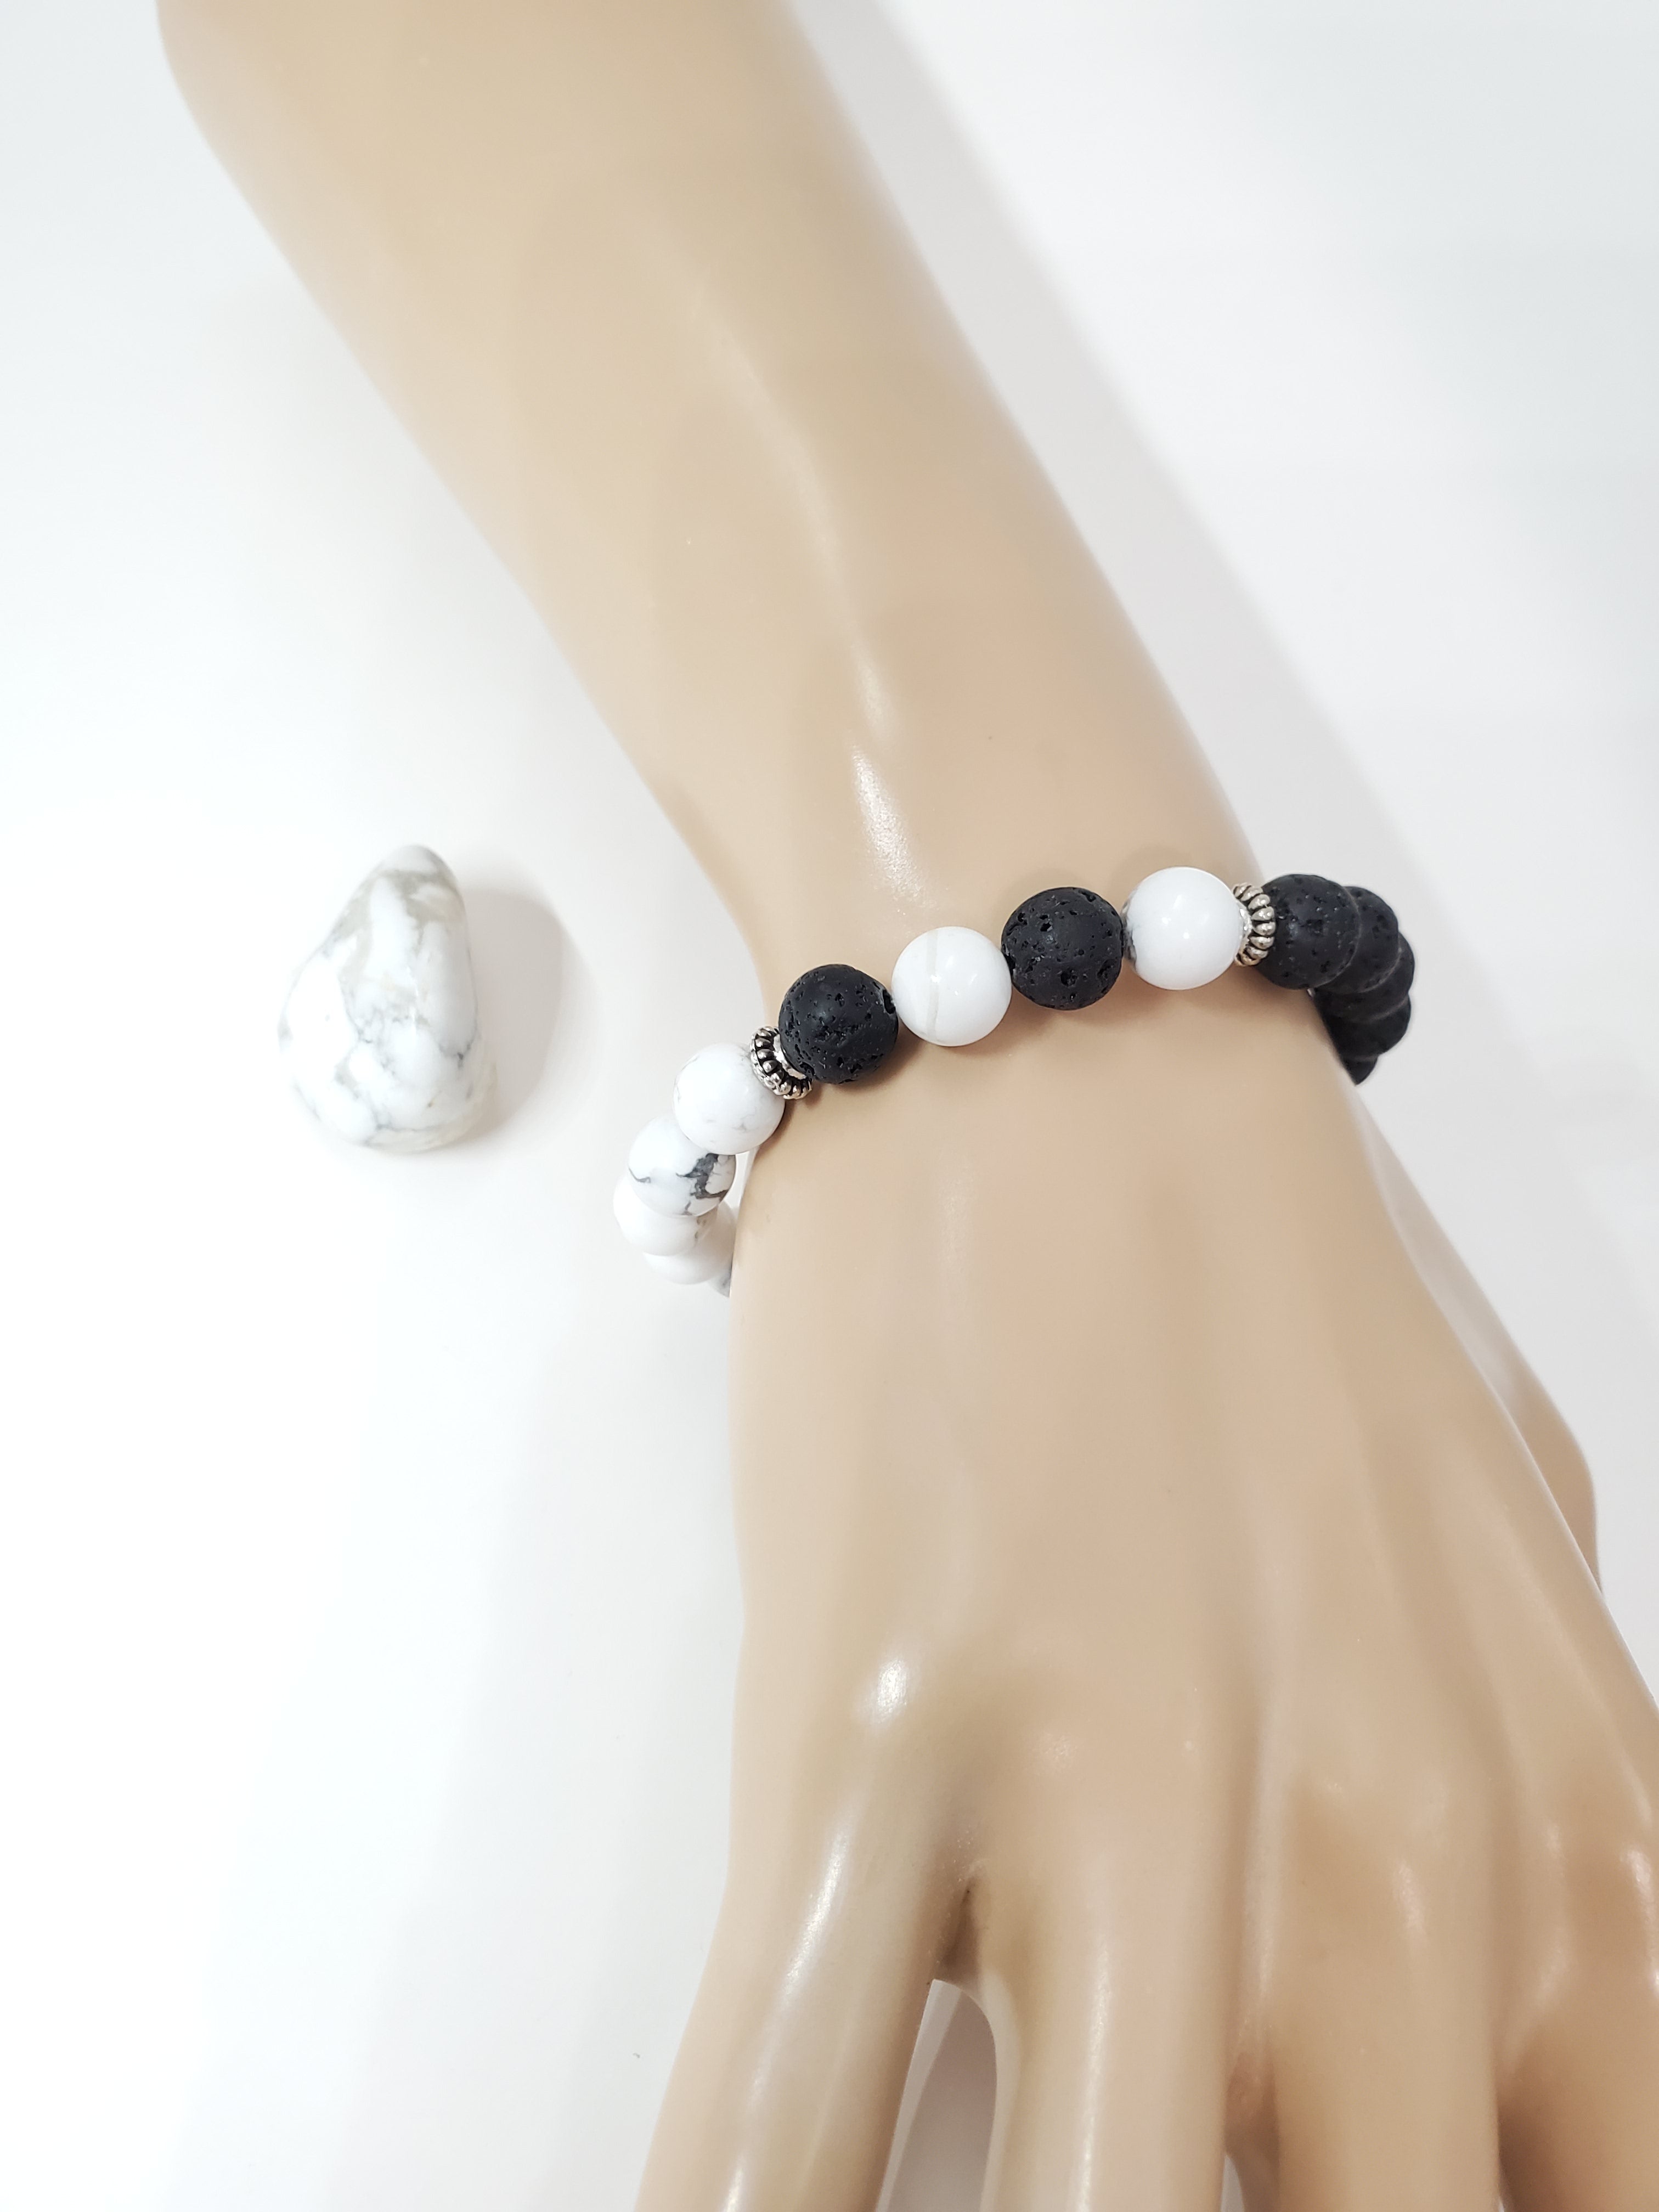 Yin Yang Lava Bead Diffuser Bracelet